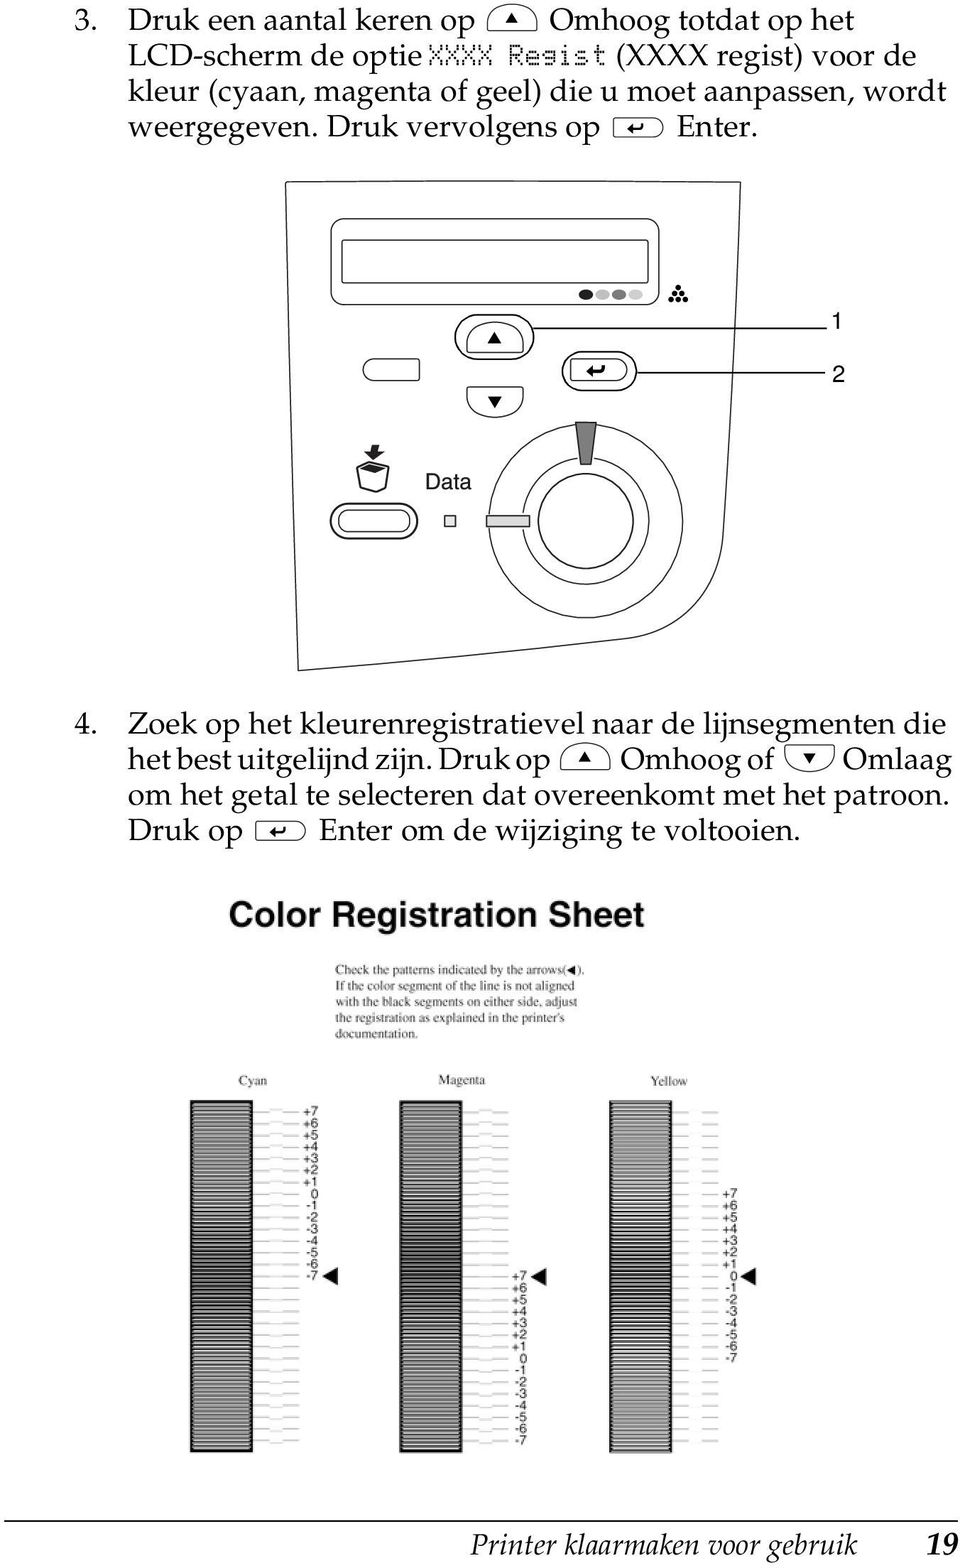 Zoek op het kleurenregistratievel naar de lijnsegmenten die het best uitgelijnd zijn.